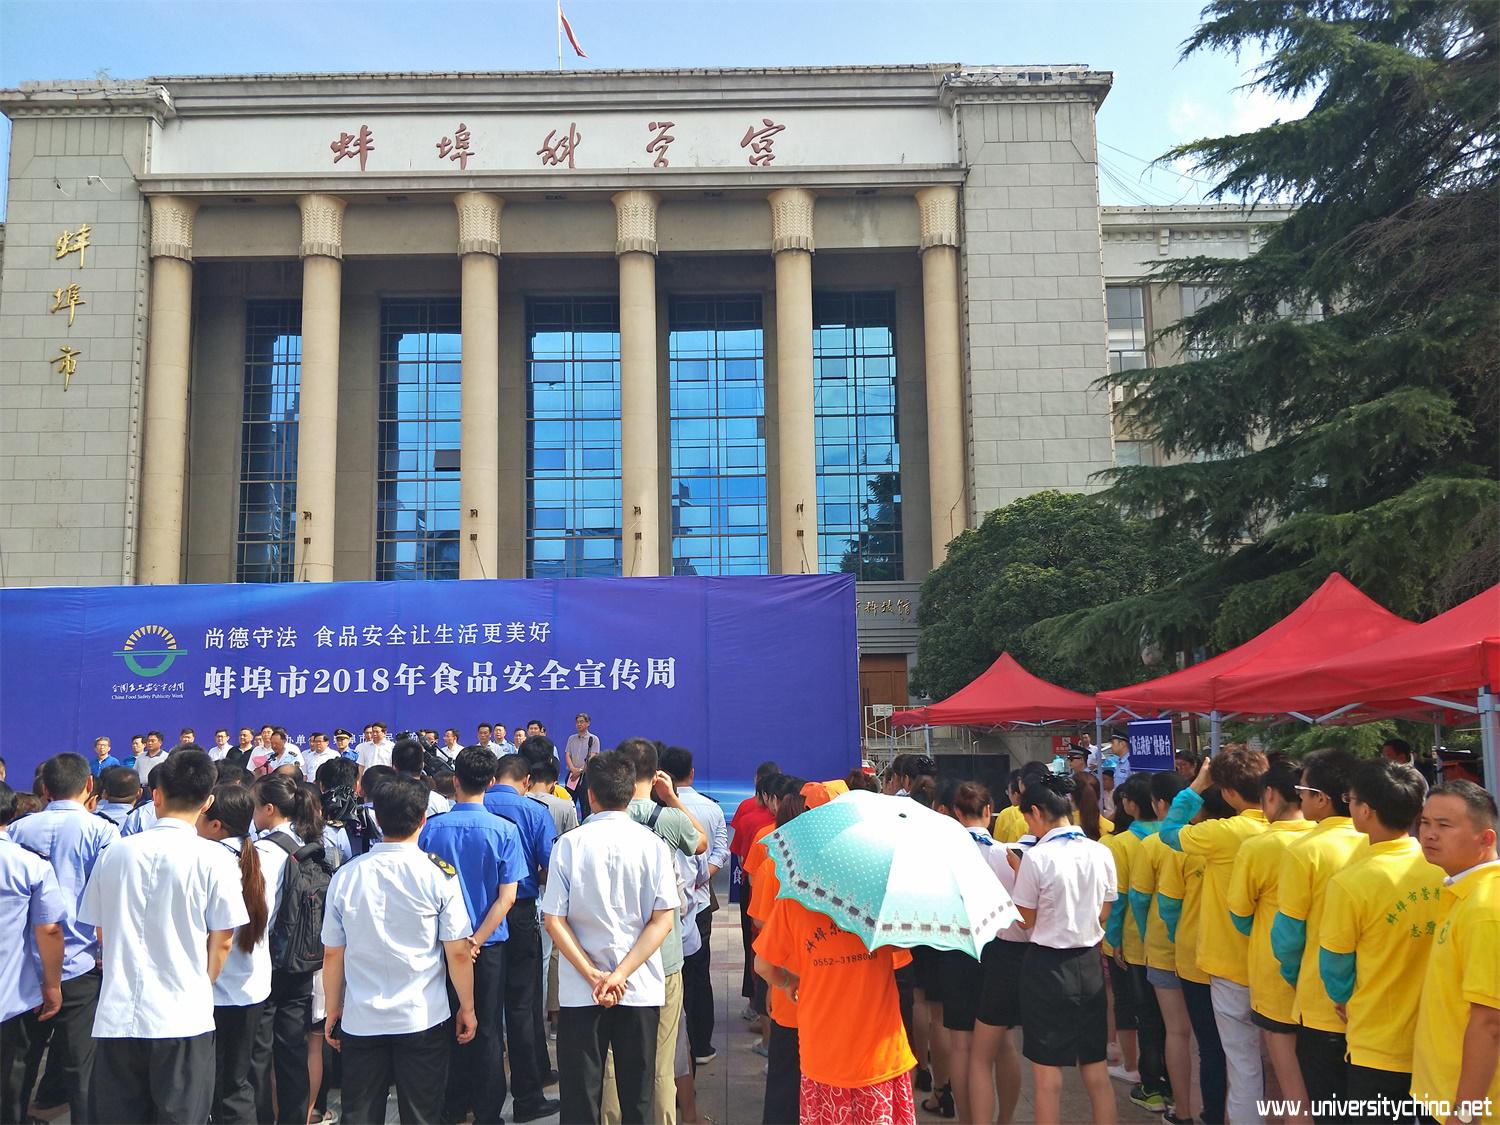 大学生三下乡团队出席蚌埠市食品安全宣传周启